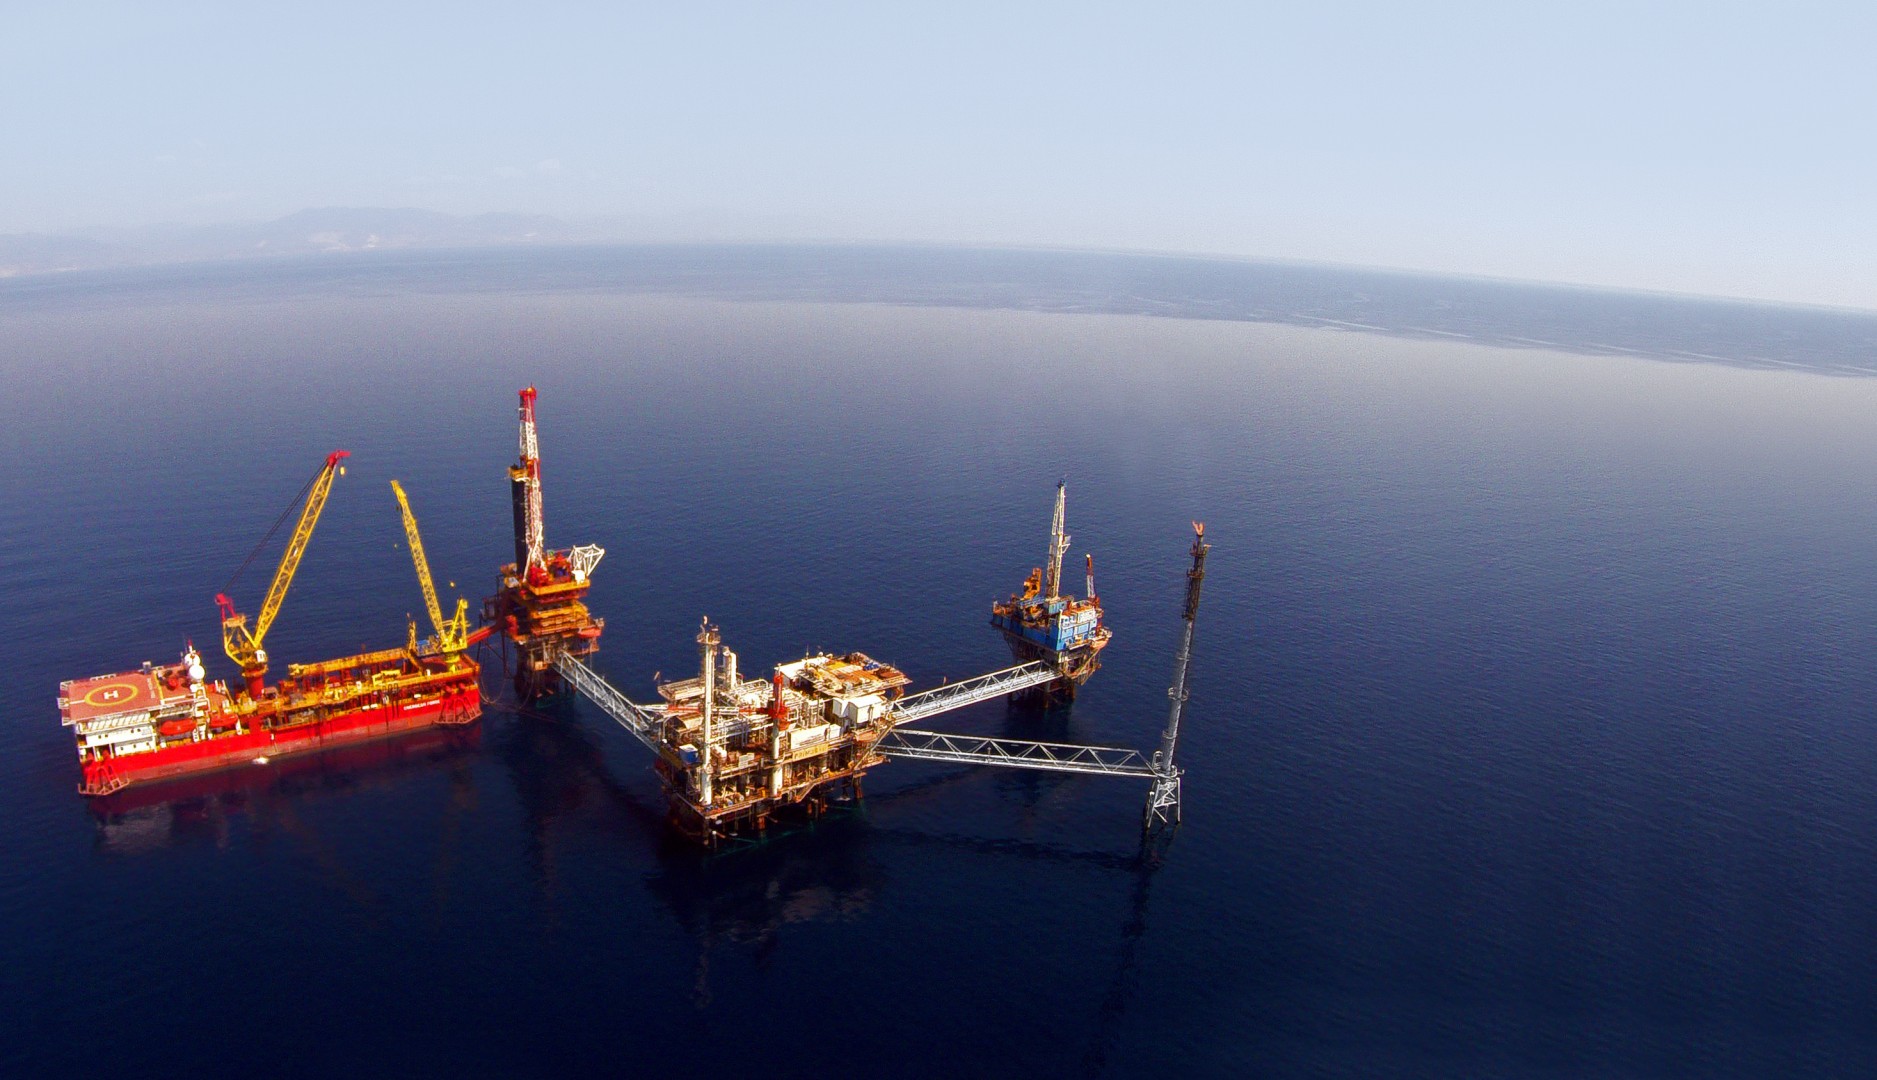 Κύπρος & Exxon Mobil ανακοινώνουν τα ευρήματα στο τεμάχιο 10: Με κατάληψη εδάφους & «Γαλάζια Πατρίδα» απαντάει η Άγκυρα